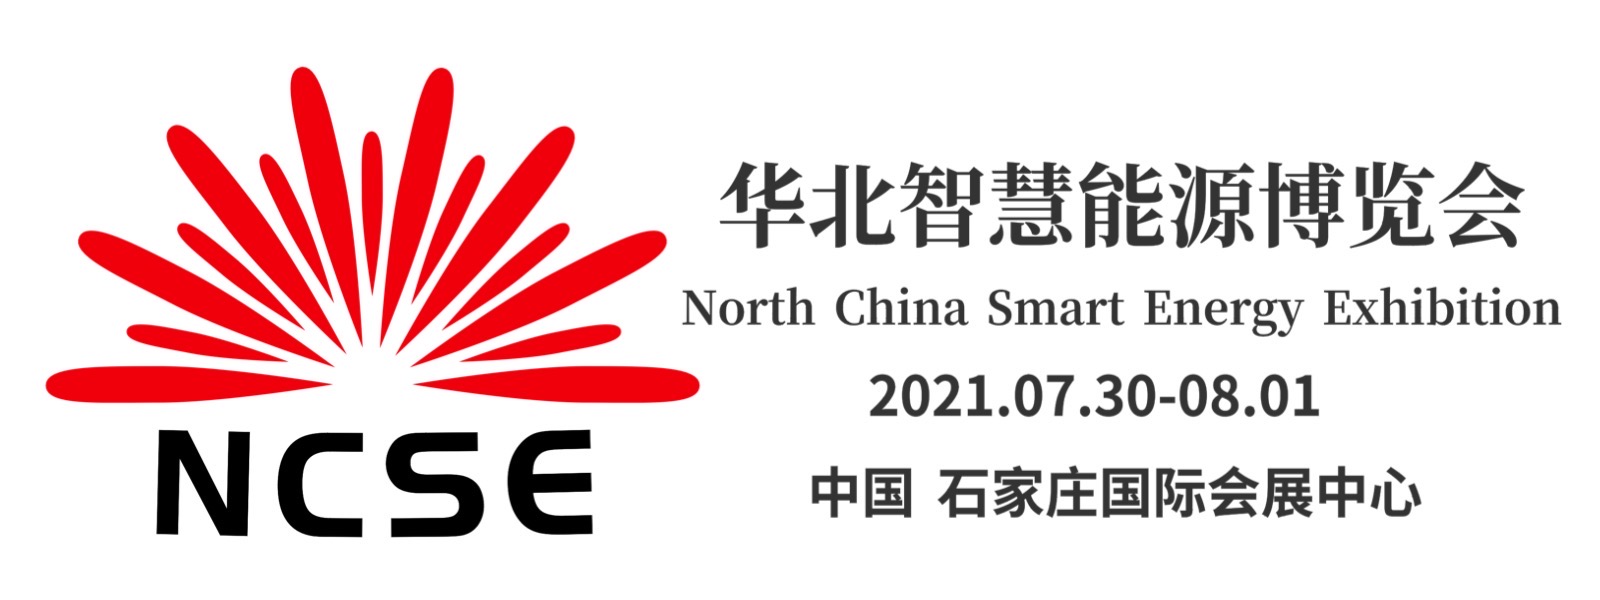 2021年华北智慧能源博览会暨光伏、储能、风能产业展览会